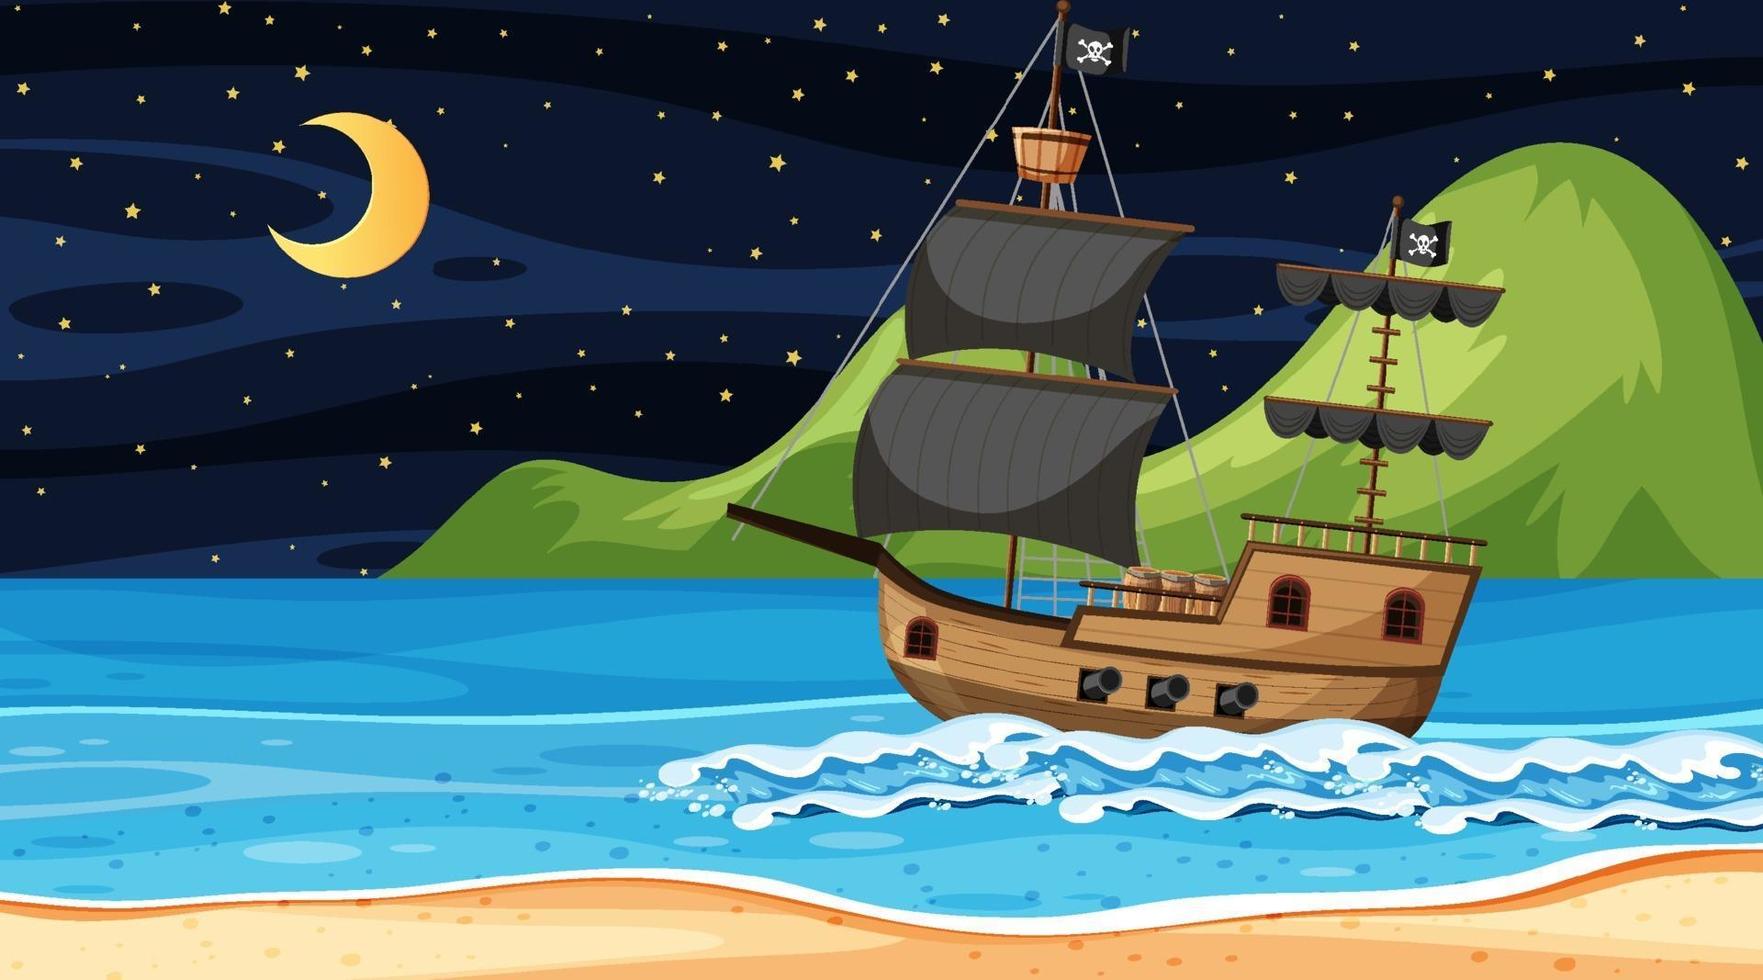 oceaan met piratenschip bij nachtscène in cartoonstijl vector